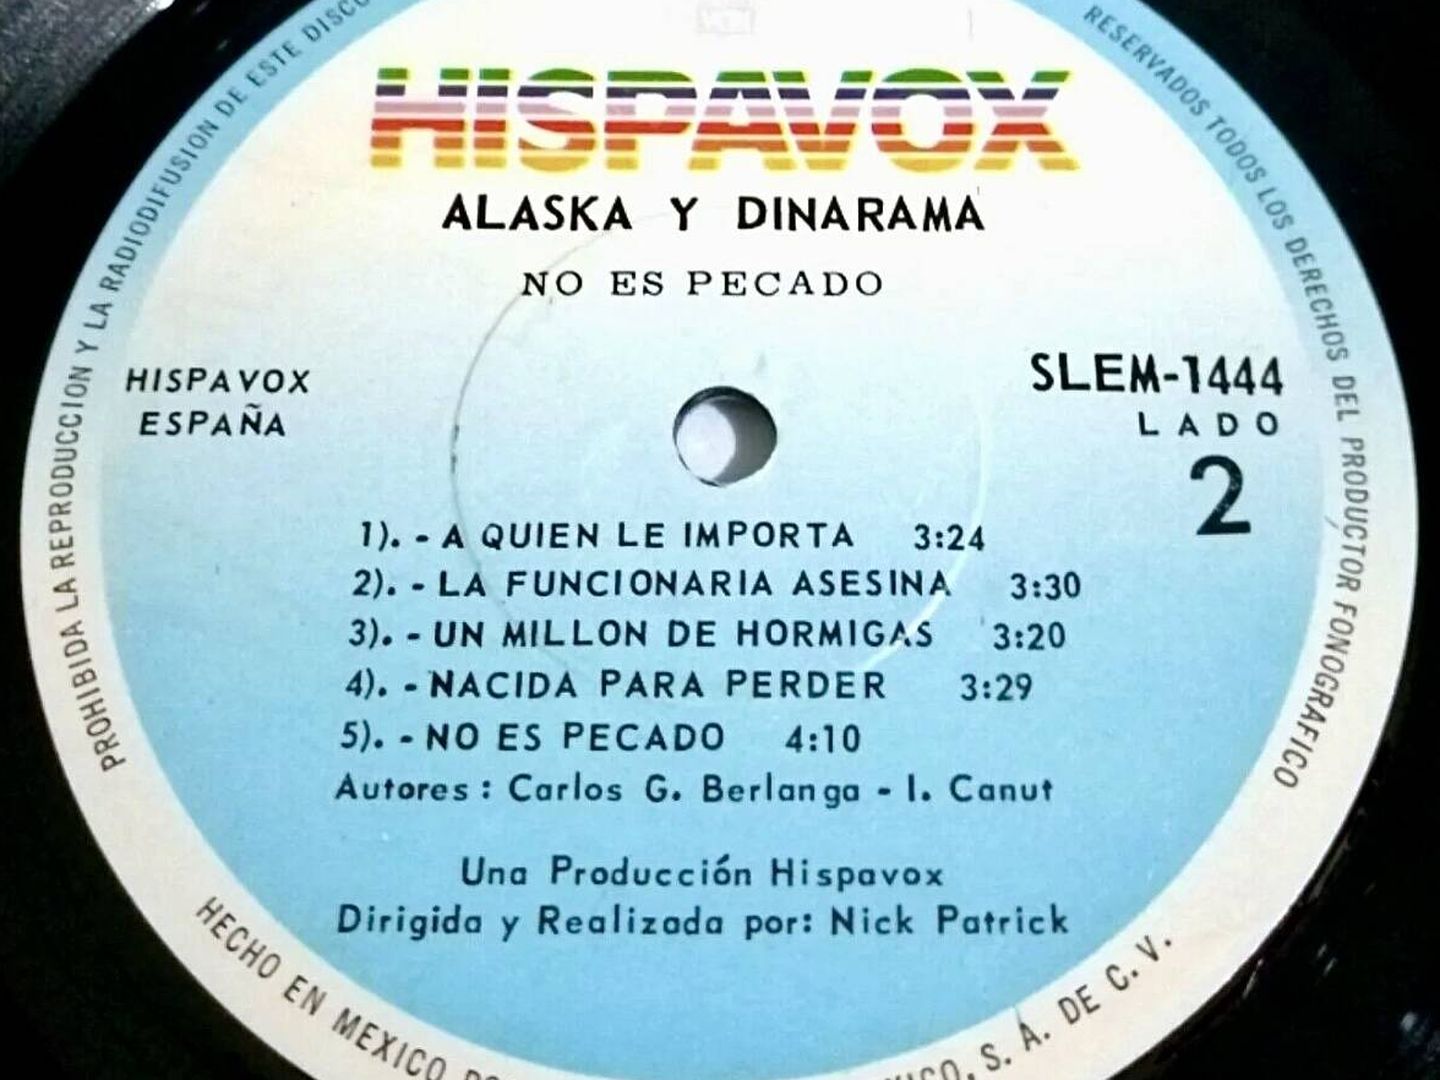 Cara B de 'No es pecado'. Alaska y Dinarama. Hispavox. 1986.